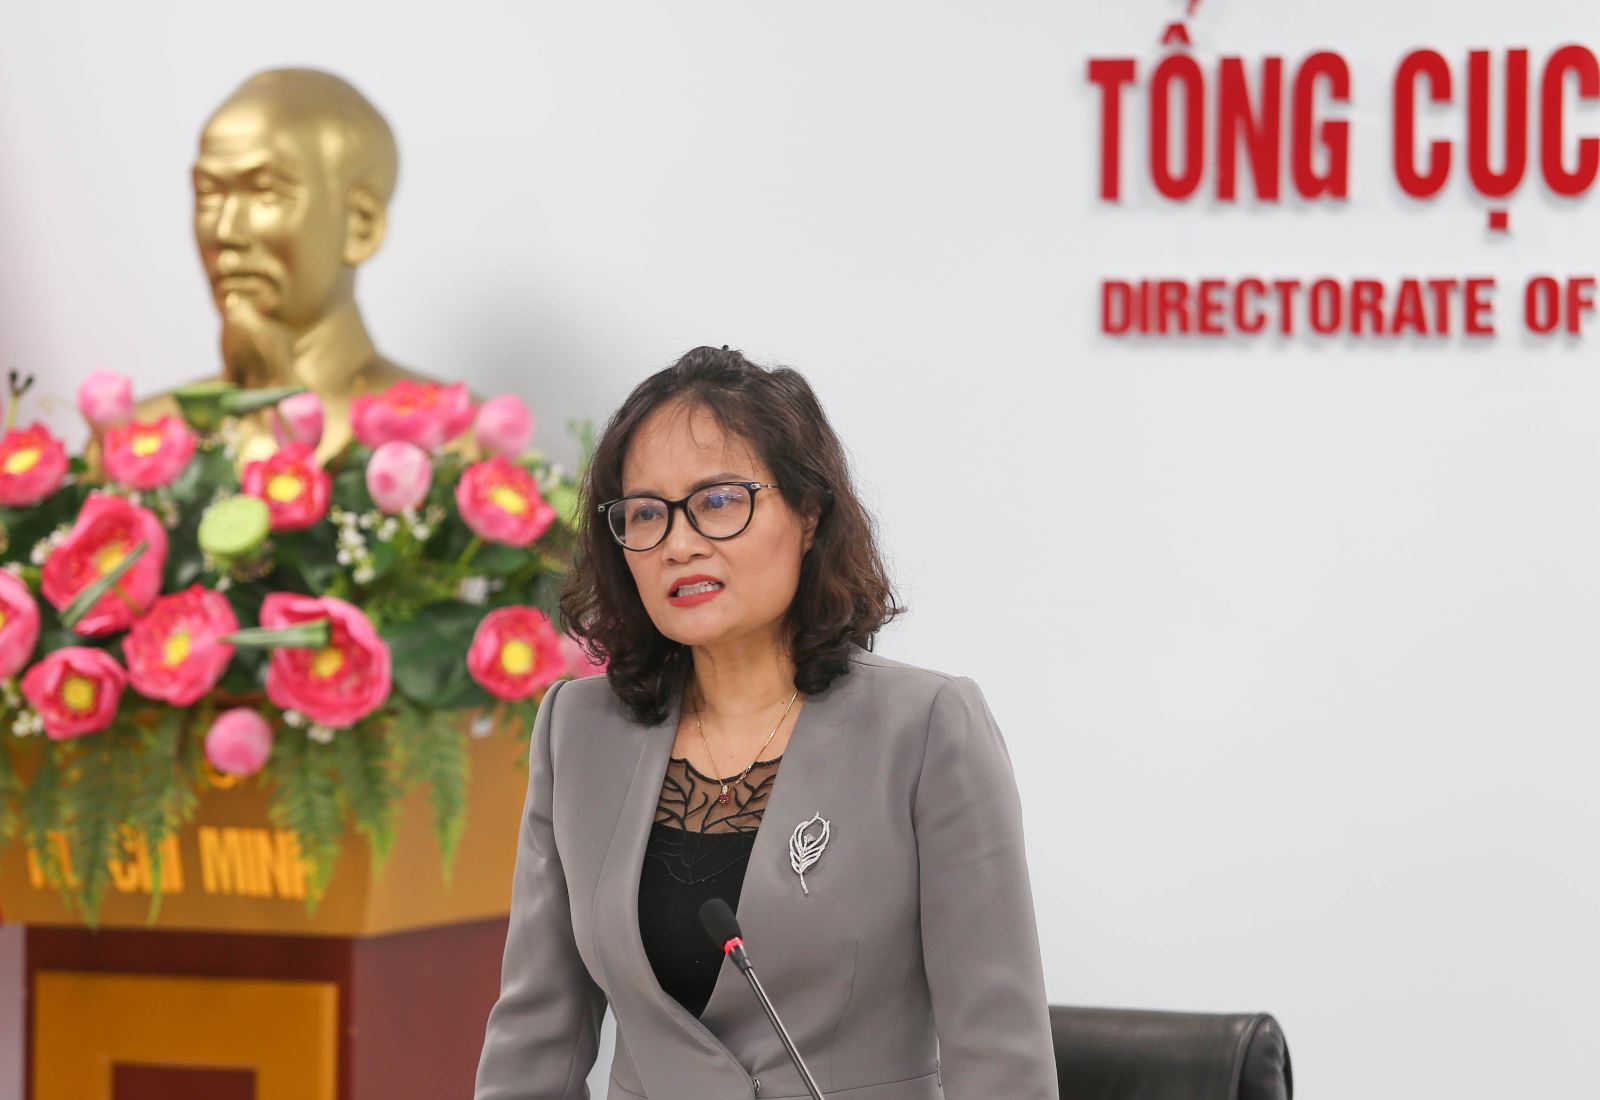 Phó Tổng cục trưởng Tổng cục GDNN Ts Nguyễn Thị Việt Hương phát biểu trong buổi gặp gỡ báo chí.